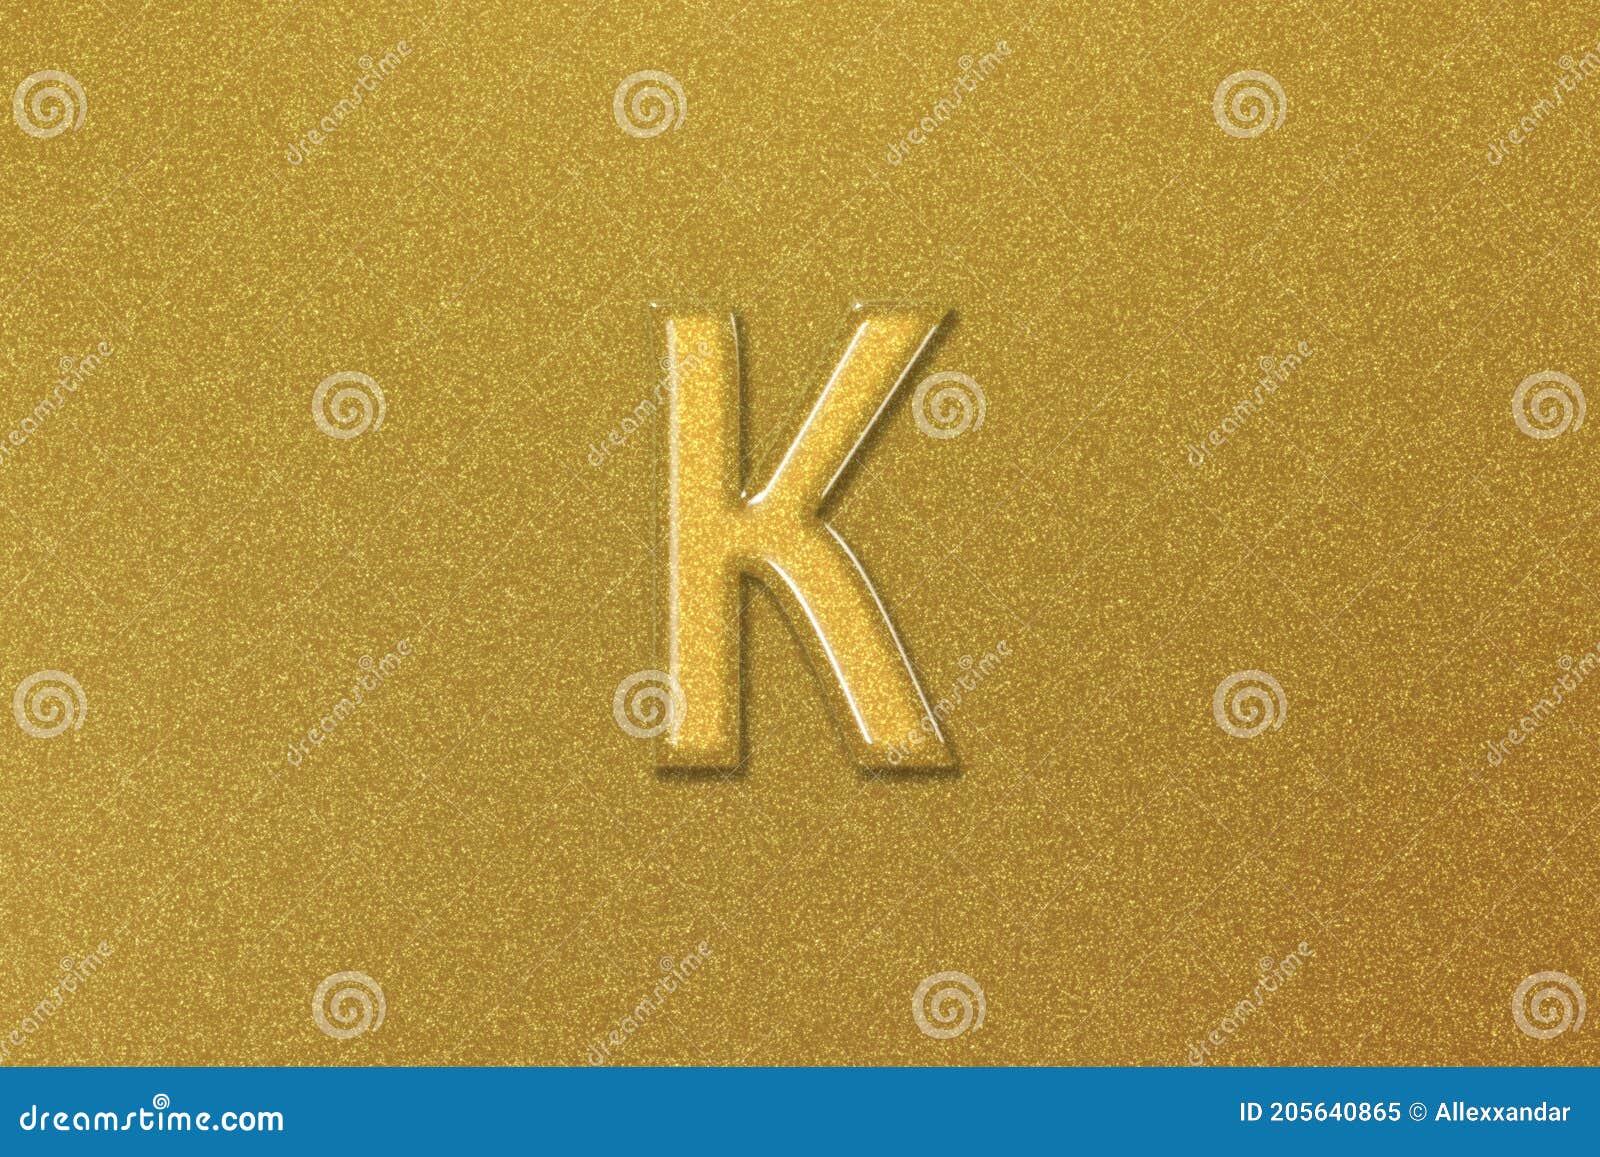 onderwijzen Zoekmachinemarketing stel voor Kappa Sign. Kappa Letter, Greek Alphabet Symbol Stock Image - Image of  success, business: 205640865